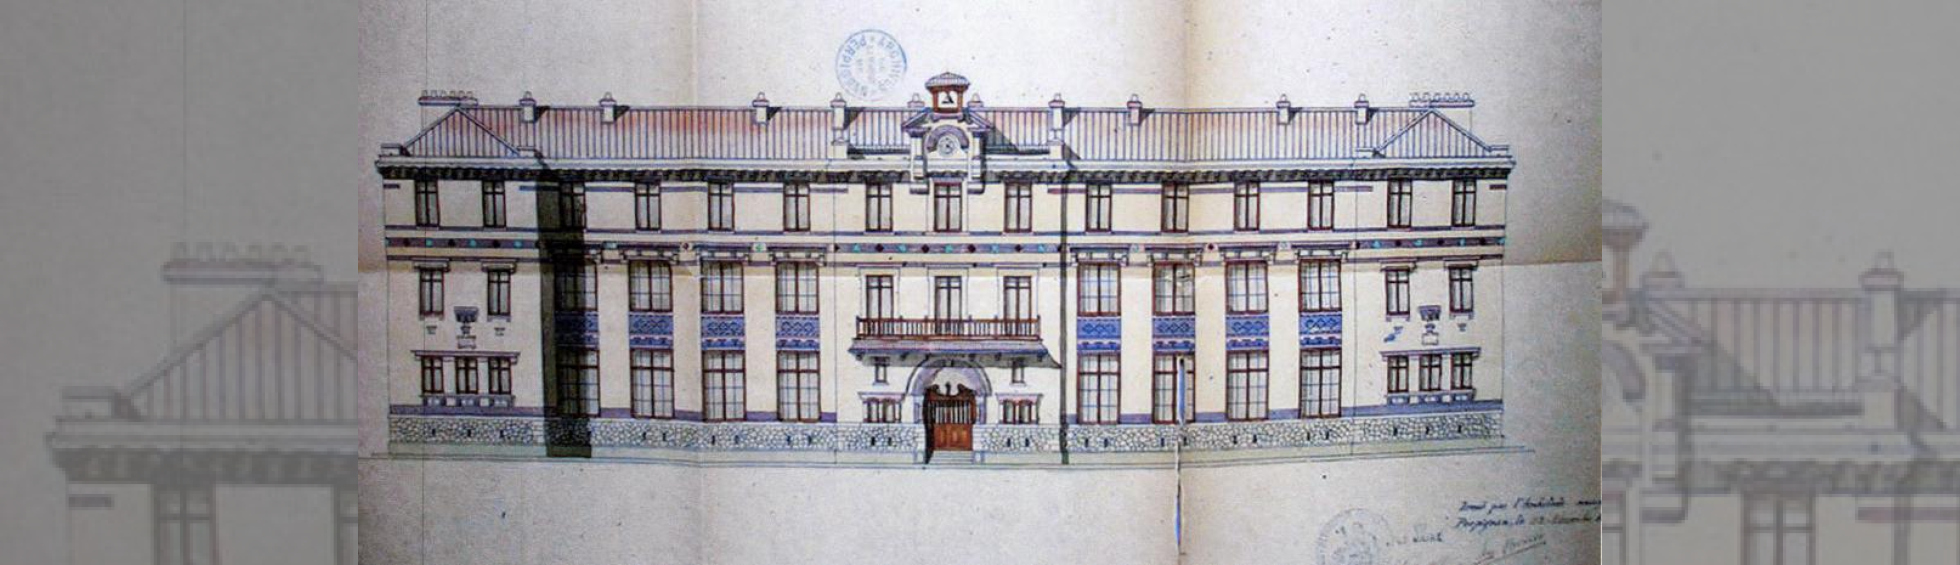 Plan de façade:batiment symétrique avec une entrée  décorée de bas relief,allège de fenetres avec carreaux colorés